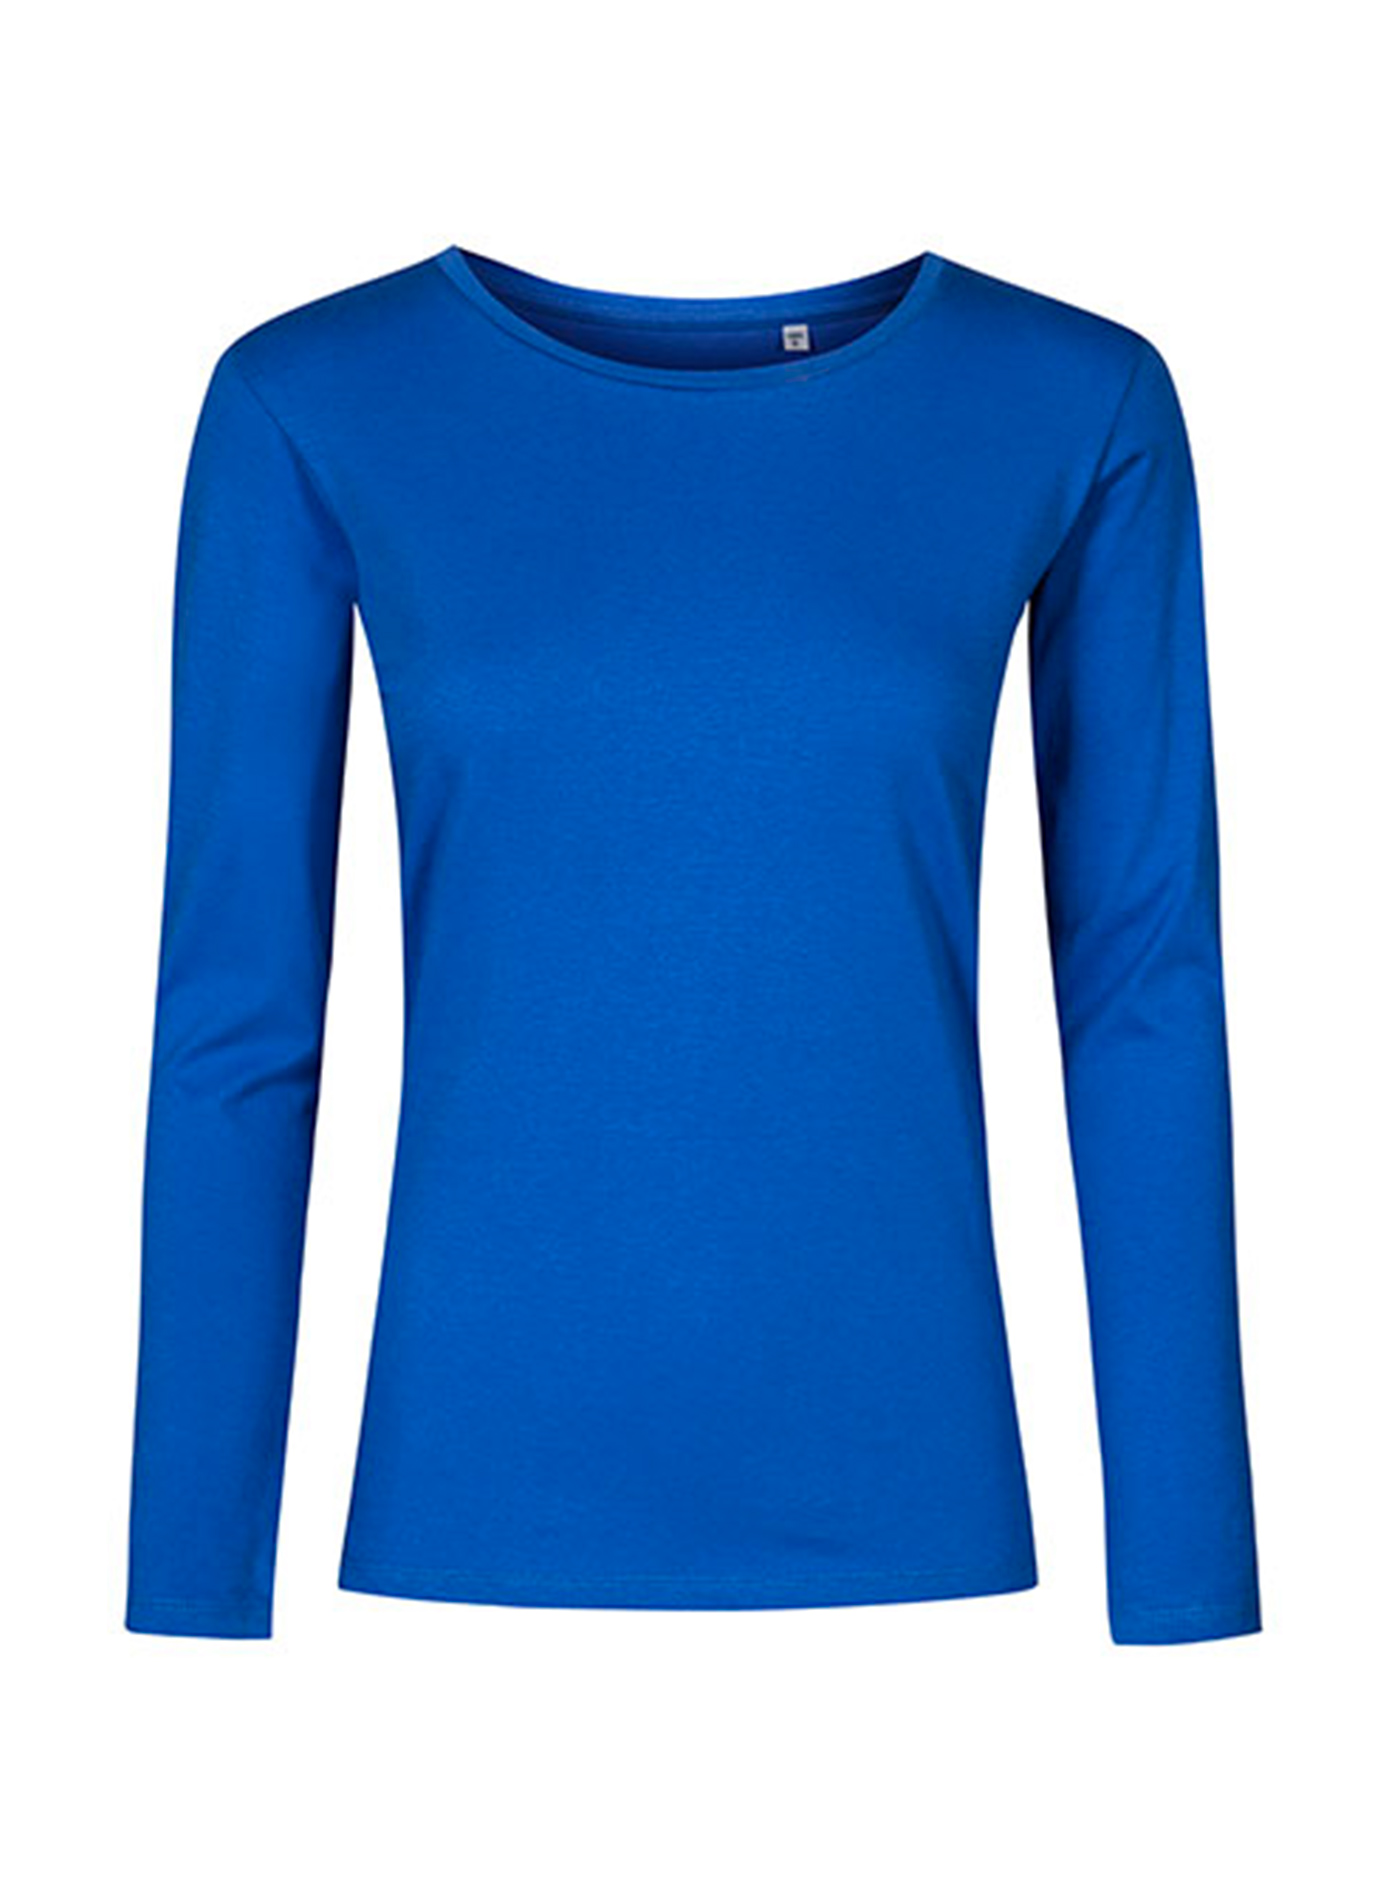 Dámské tričko s dlouhým rukávem s kulatým výstřihem Promodoro - Kobaltově modrá S